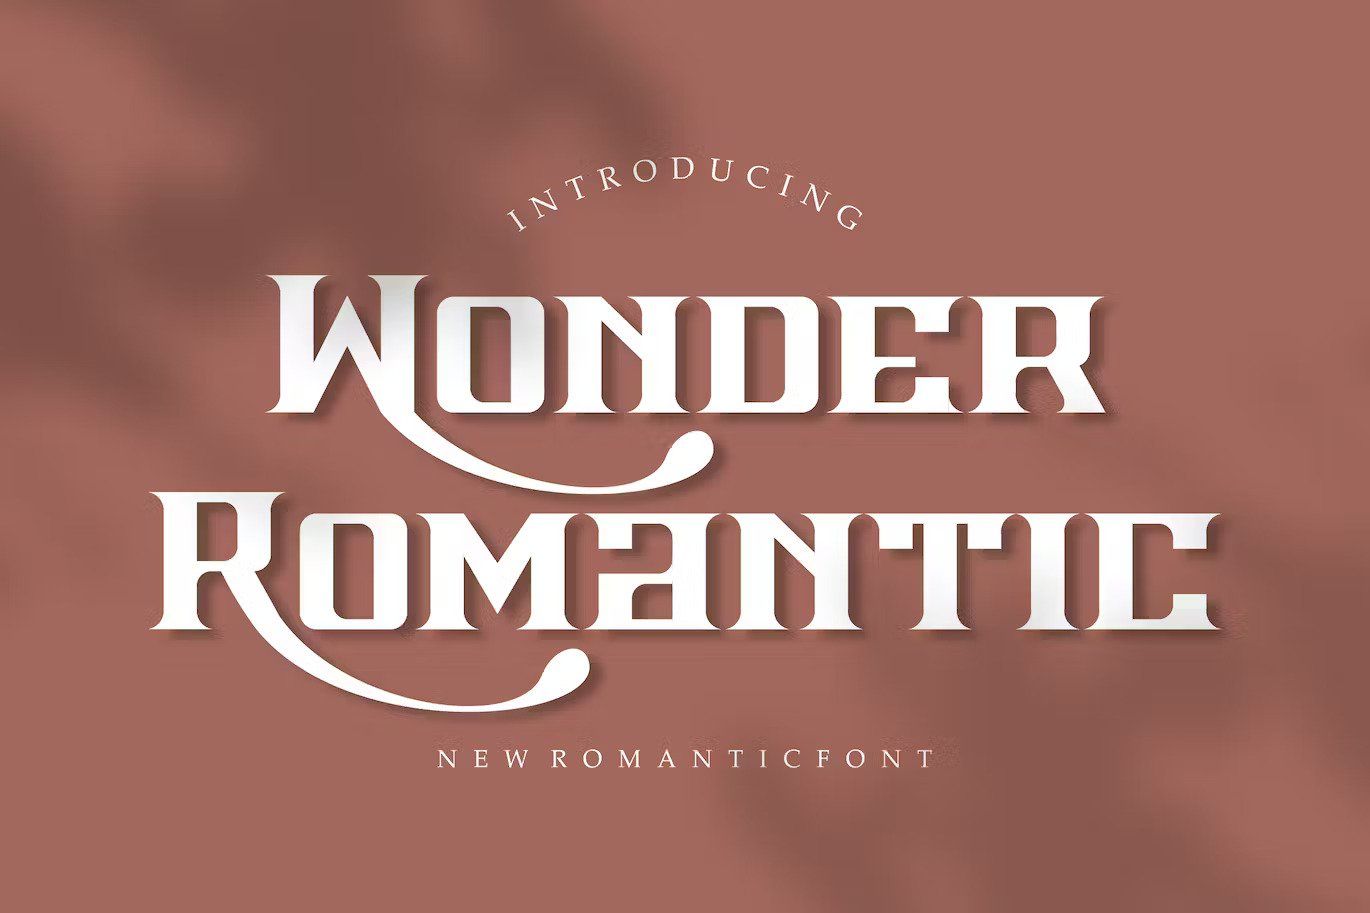 A new romantic font